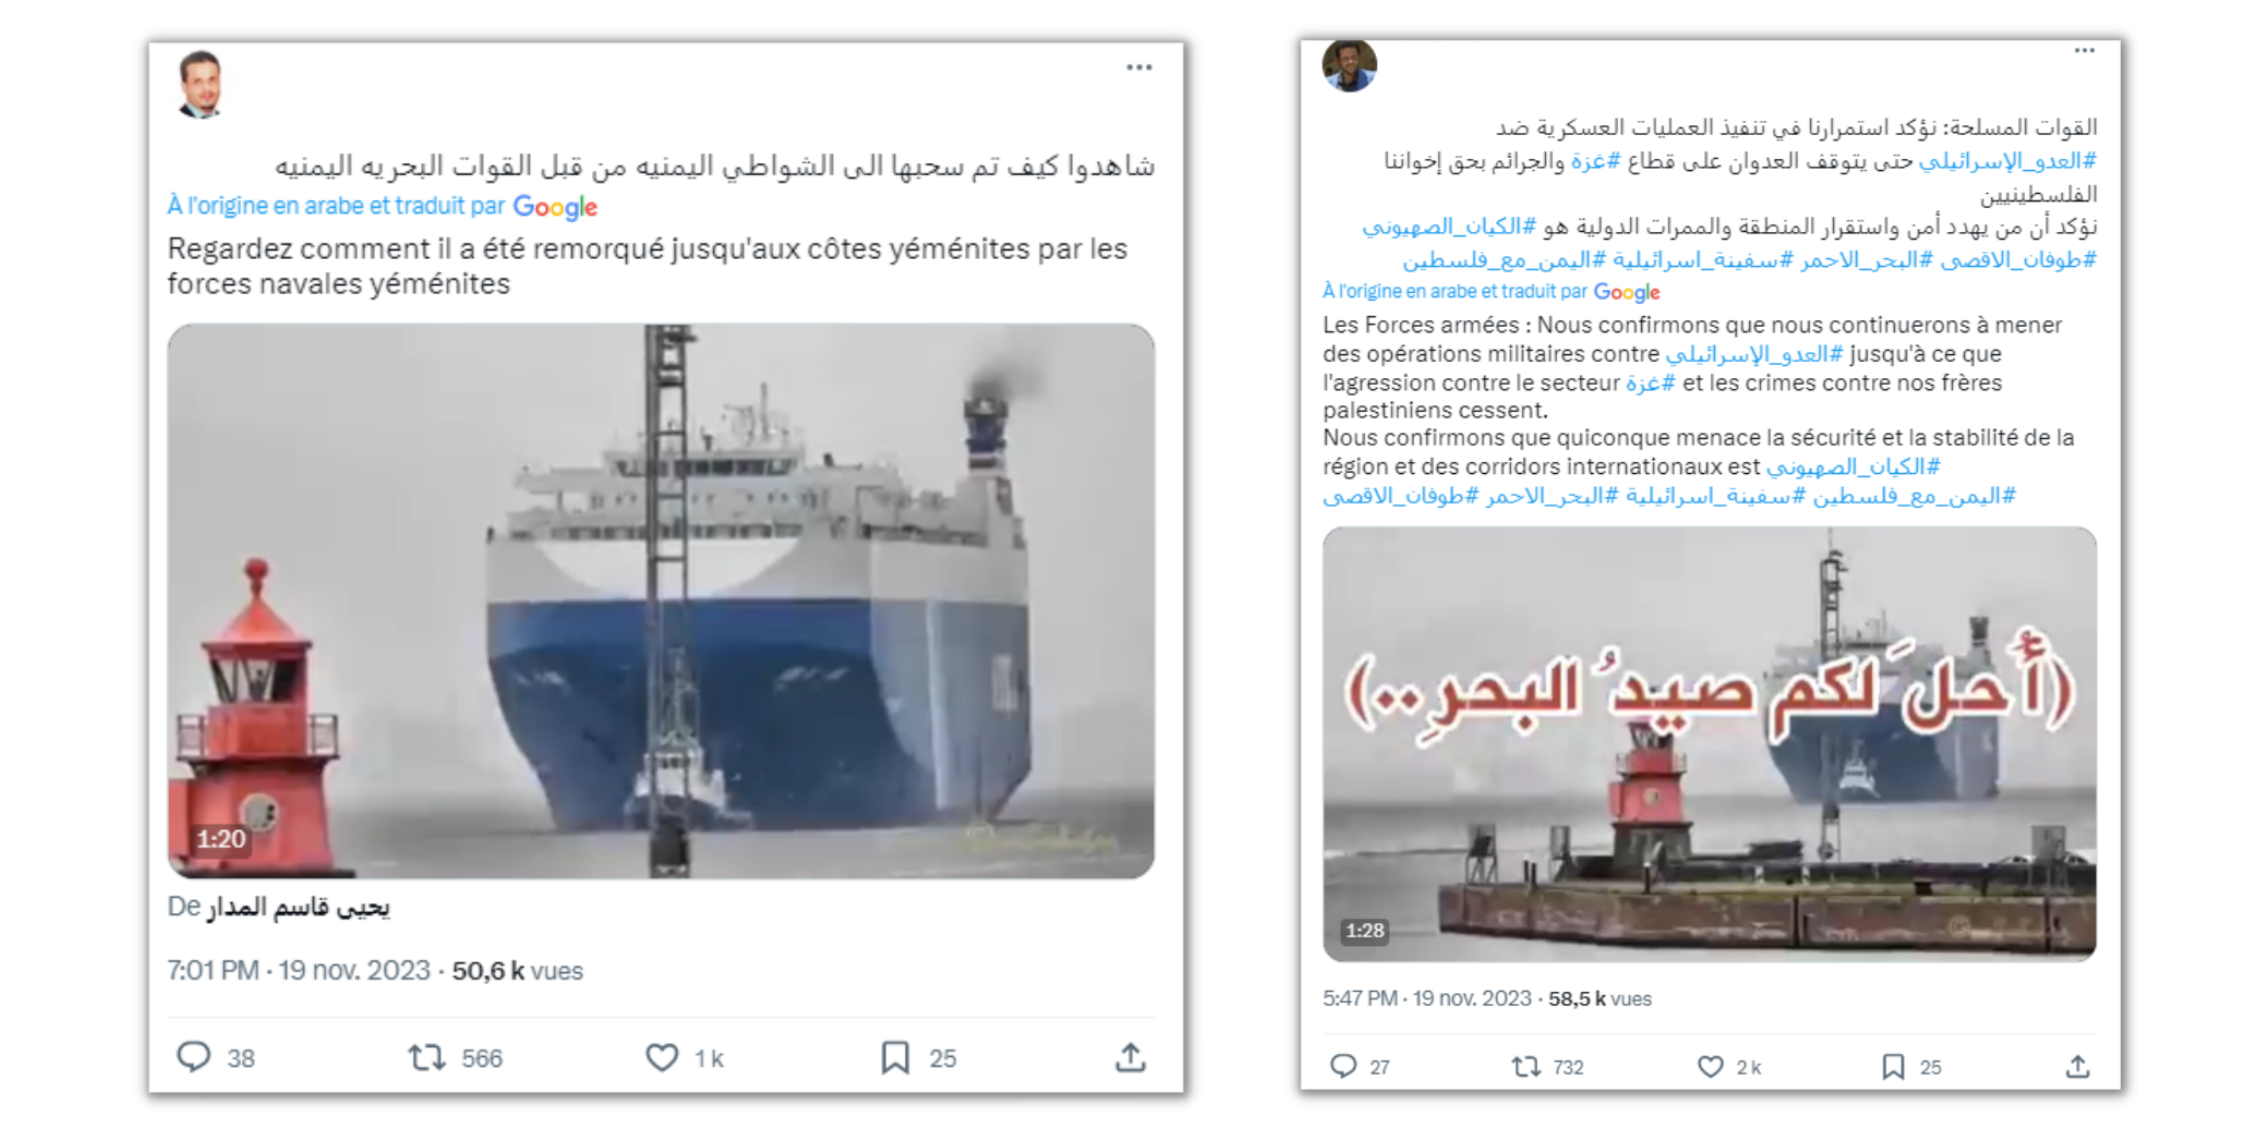 Contrairement à ce qu'affirment de nombreuses publications, cette vidéo ne montre pas le Galaxy Leader capturé par les rebelles yéménites.